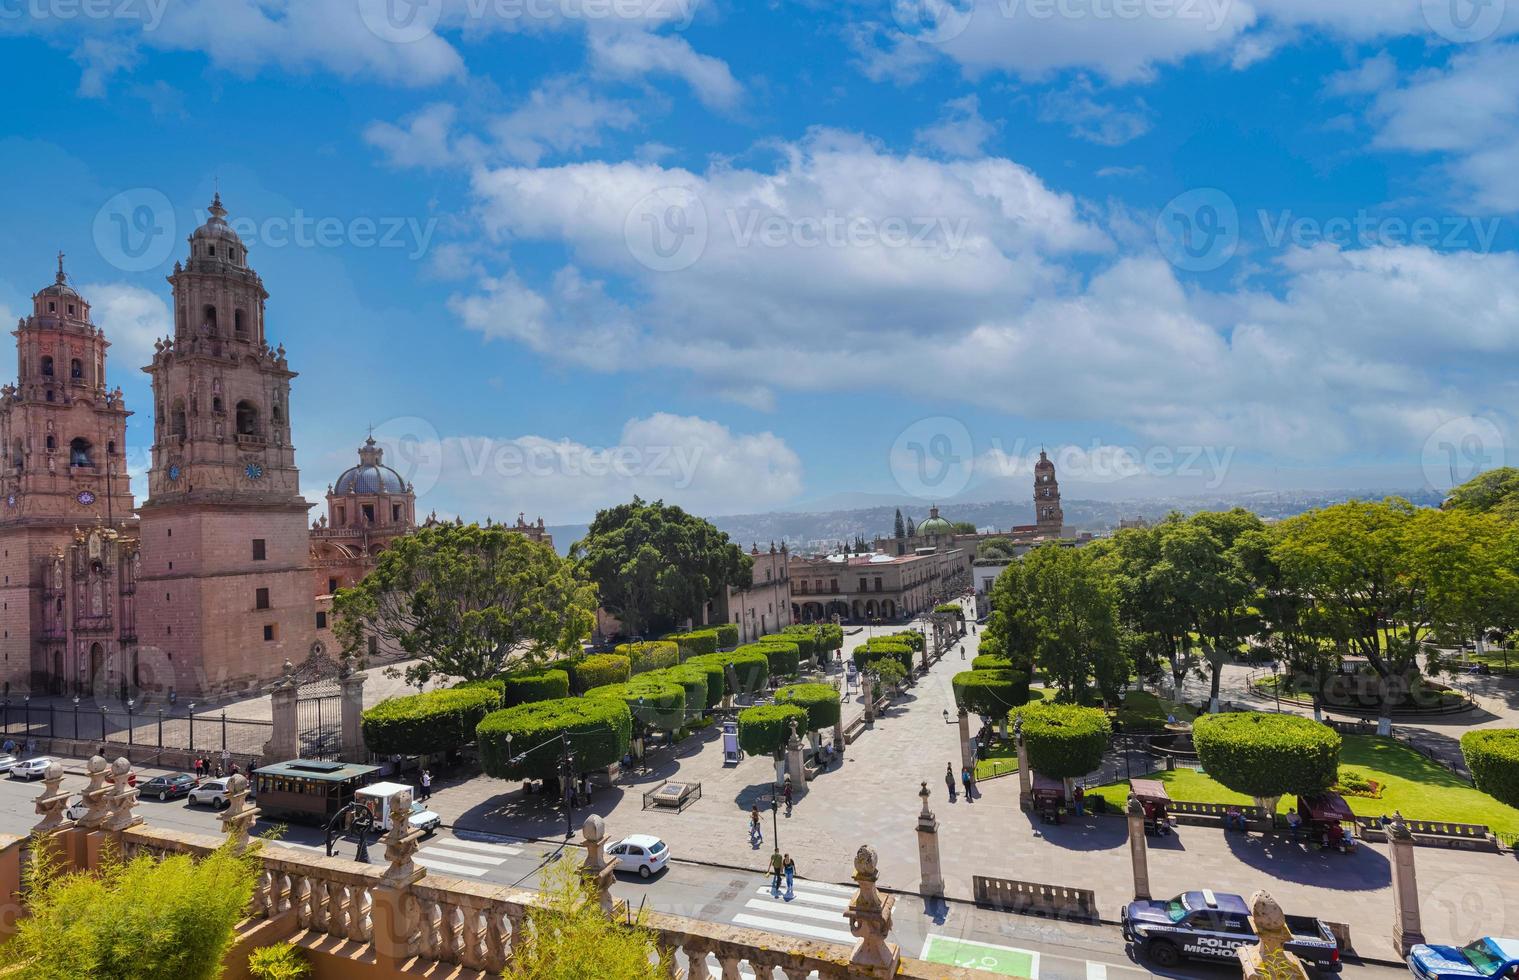 célèbre cathédrale pittoresque de morelia située sur la plaza de armas dans le centre-ville historique photo